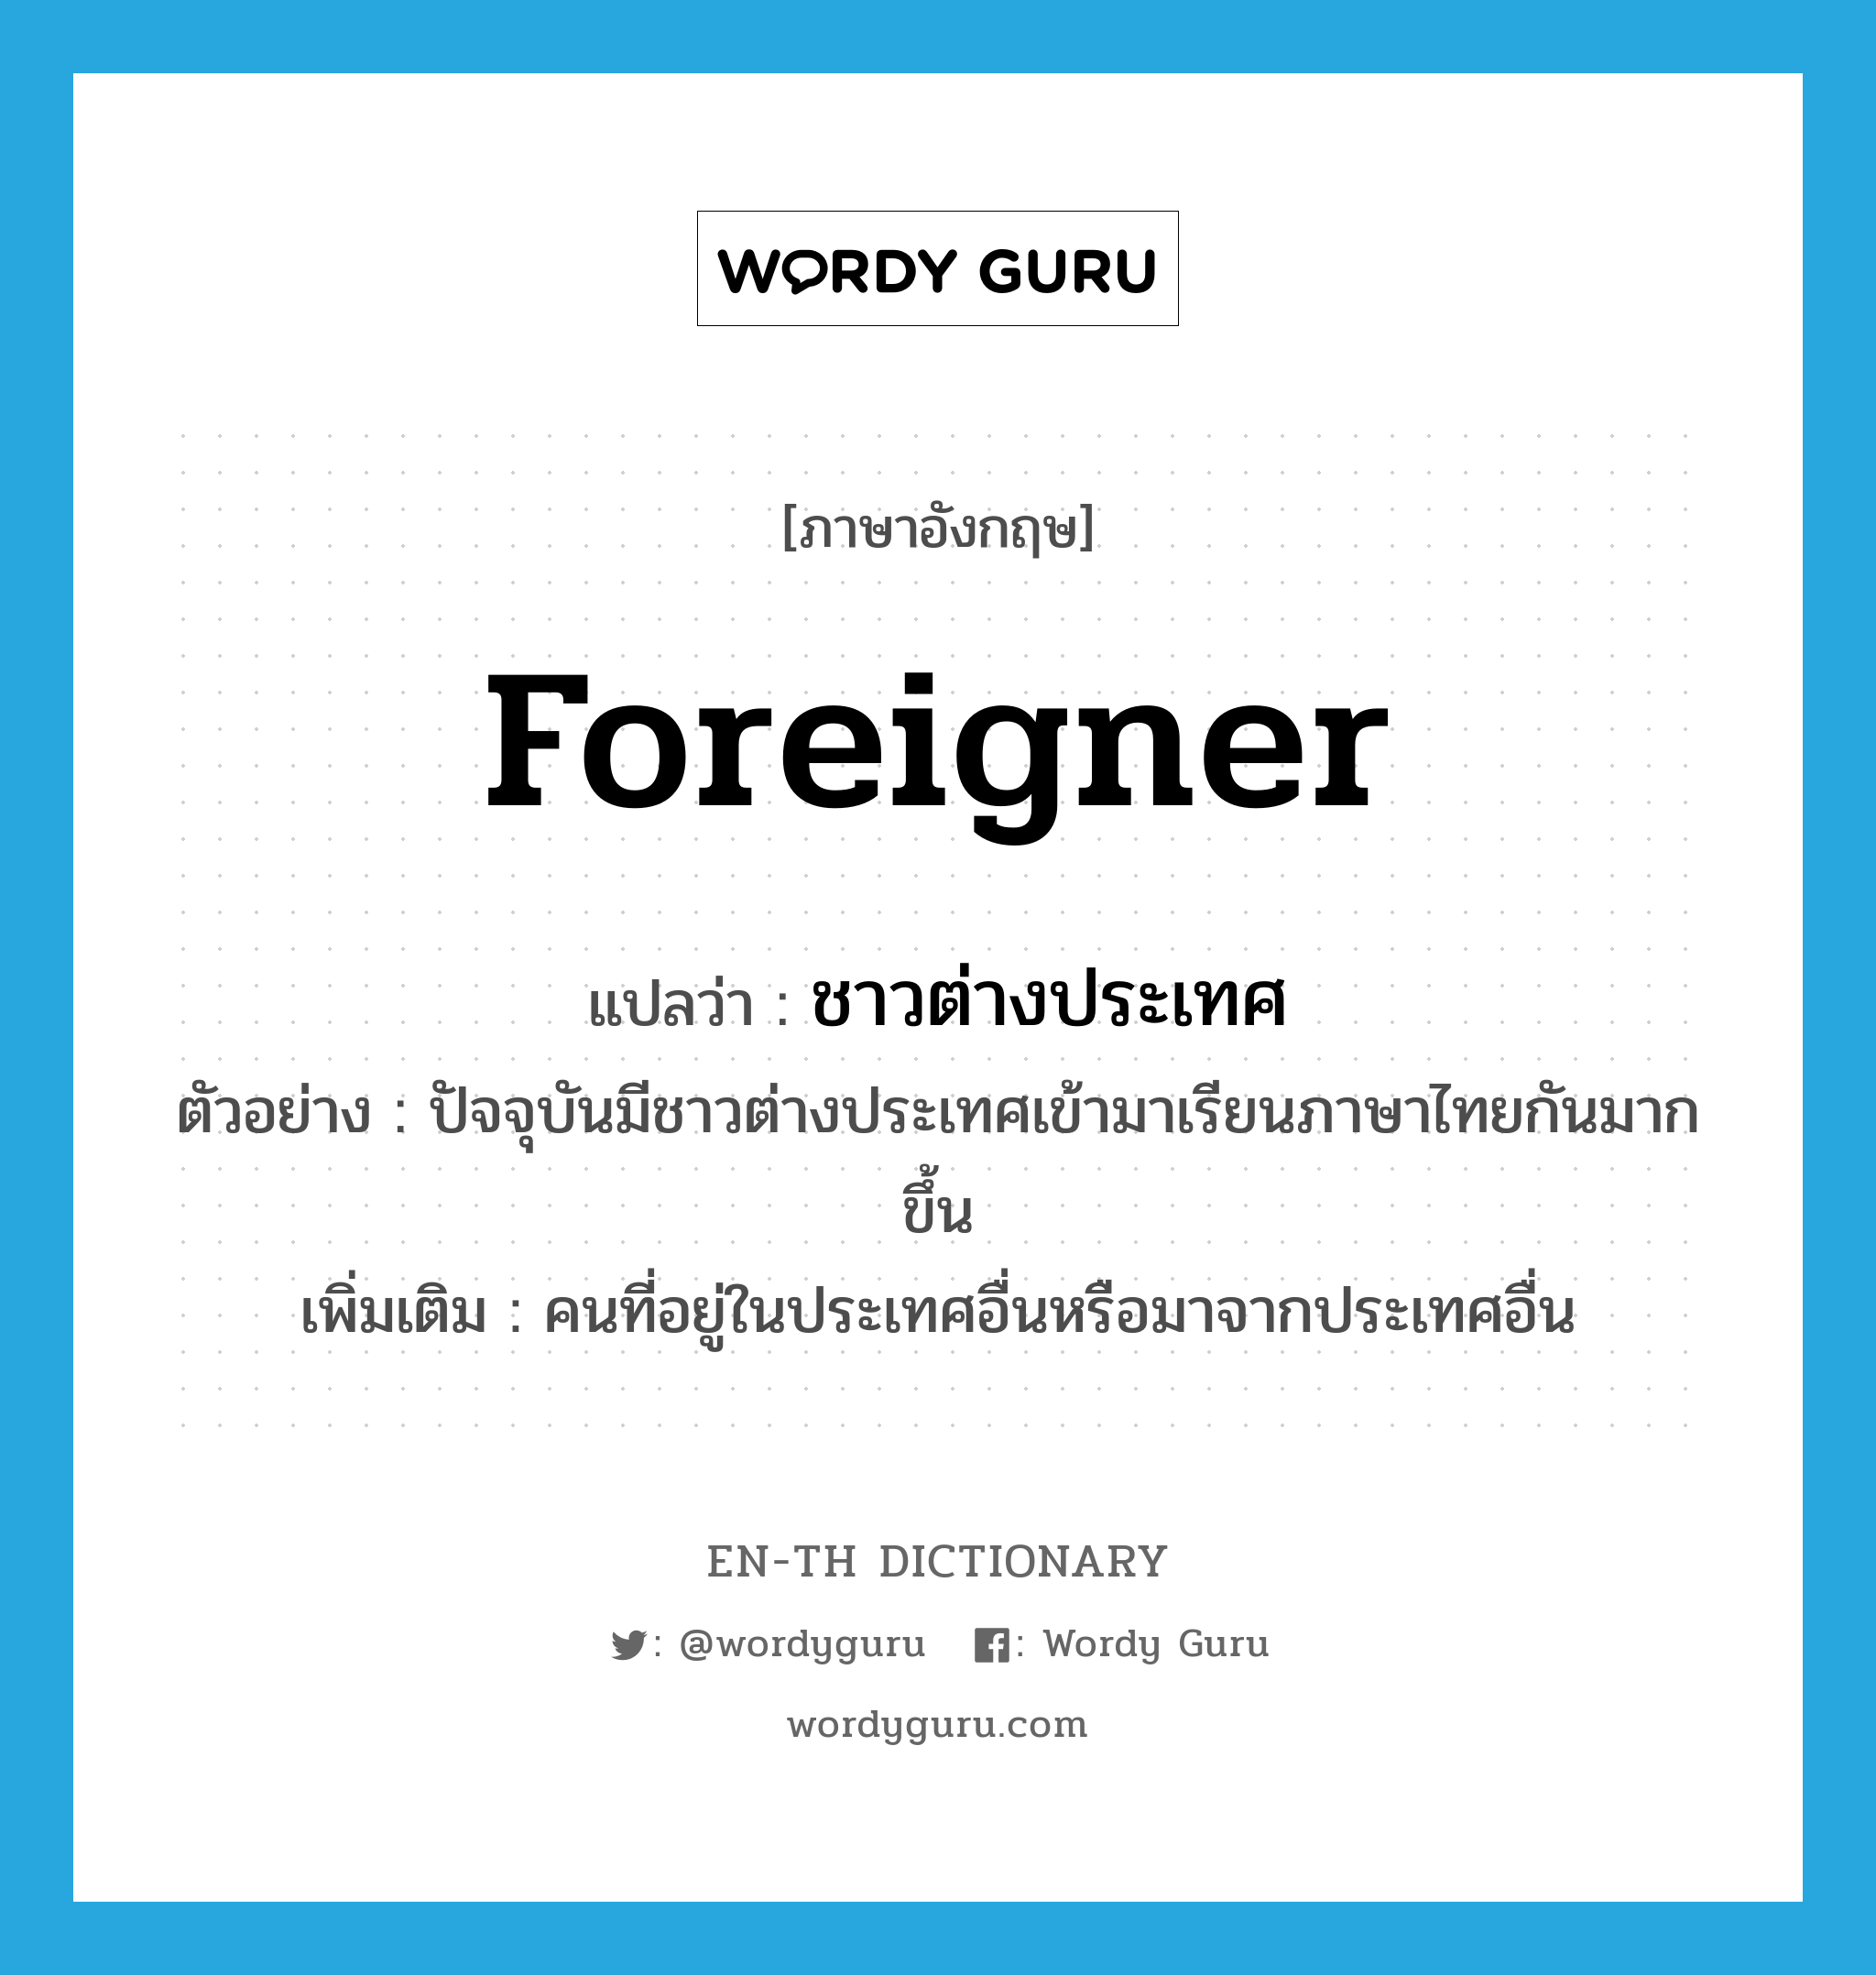 ชาวต่างประเทศ ภาษาอังกฤษ?, คำศัพท์ภาษาอังกฤษ ชาวต่างประเทศ แปลว่า foreigner ประเภท N ตัวอย่าง ปัจจุบันมีชาวต่างประเทศเข้ามาเรียนภาษาไทยกันมากขึ้น เพิ่มเติม คนที่อยู่ในประเทศอื่นหรือมาจากประเทศอื่น หมวด N